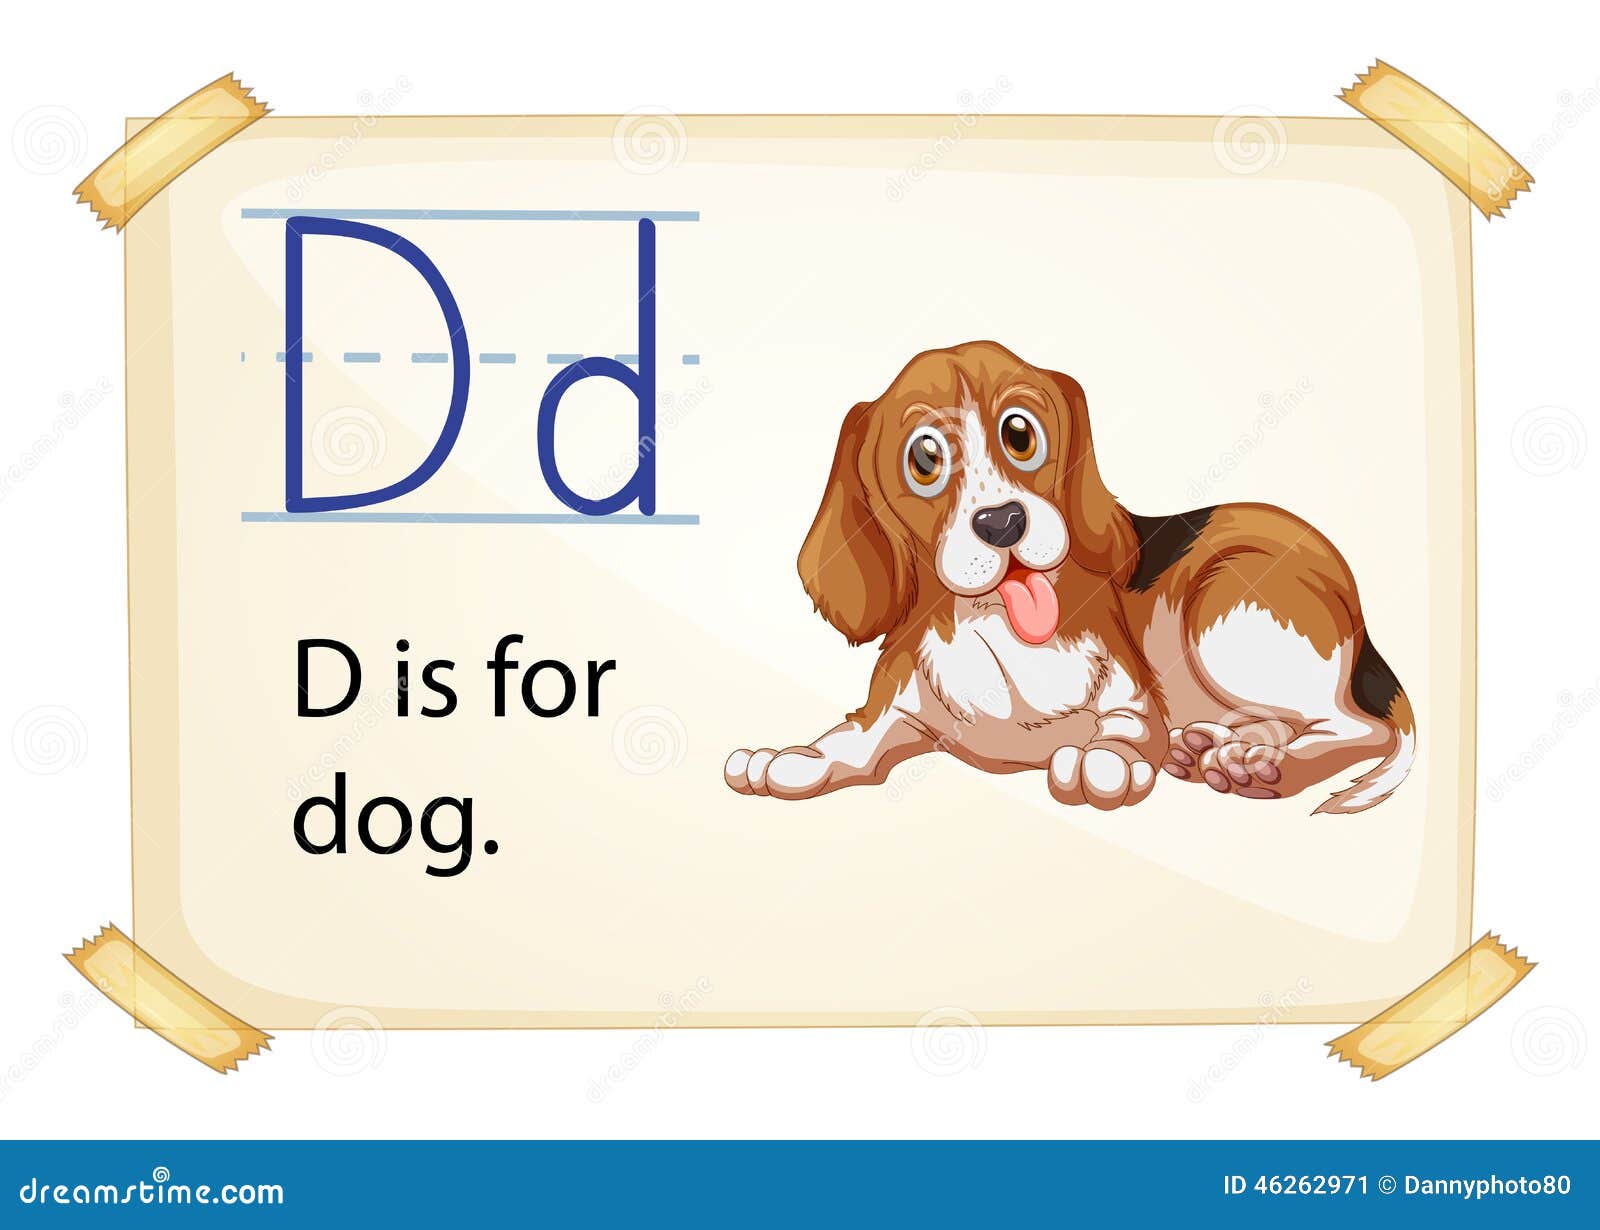 Как называется буква собака. D is for Dog. Буква д английская в виде собачки. Щенок алфавит. Буква d похожа на собаку.